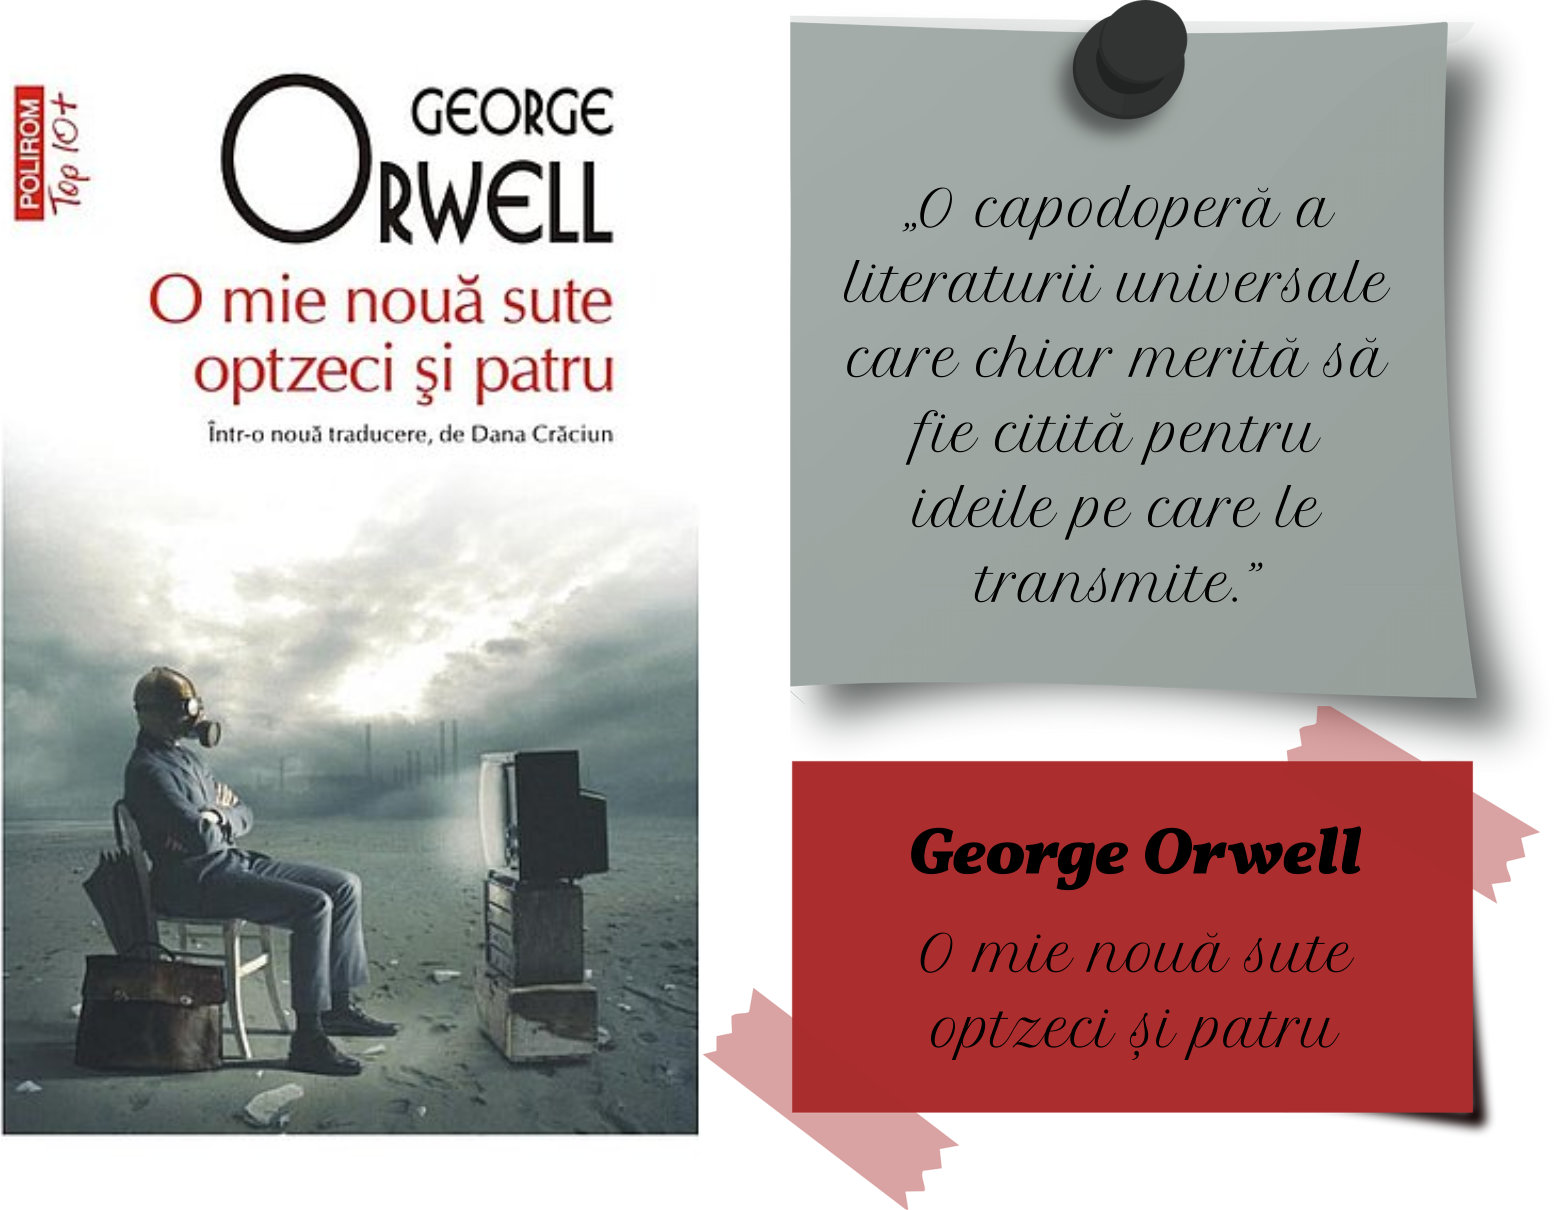 O mie nouă sute optzeci și patru, George Orwell